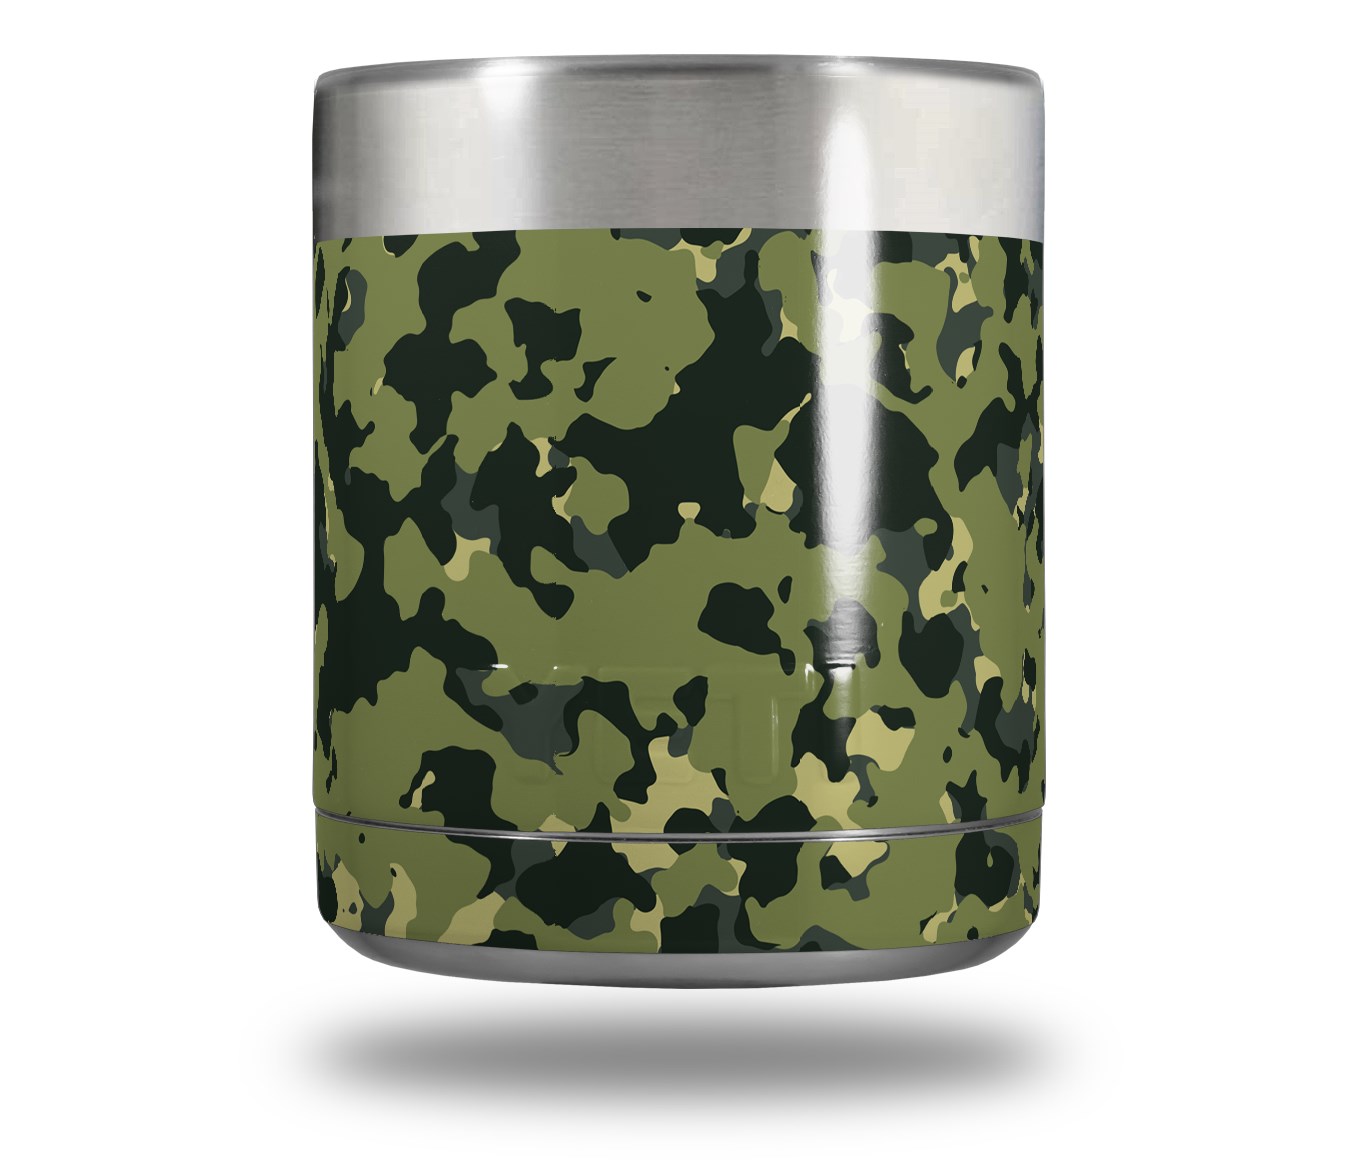 Yeti Rambler Lowball Skin Wraps WraptorCamo Old School Camouflage Camo Army